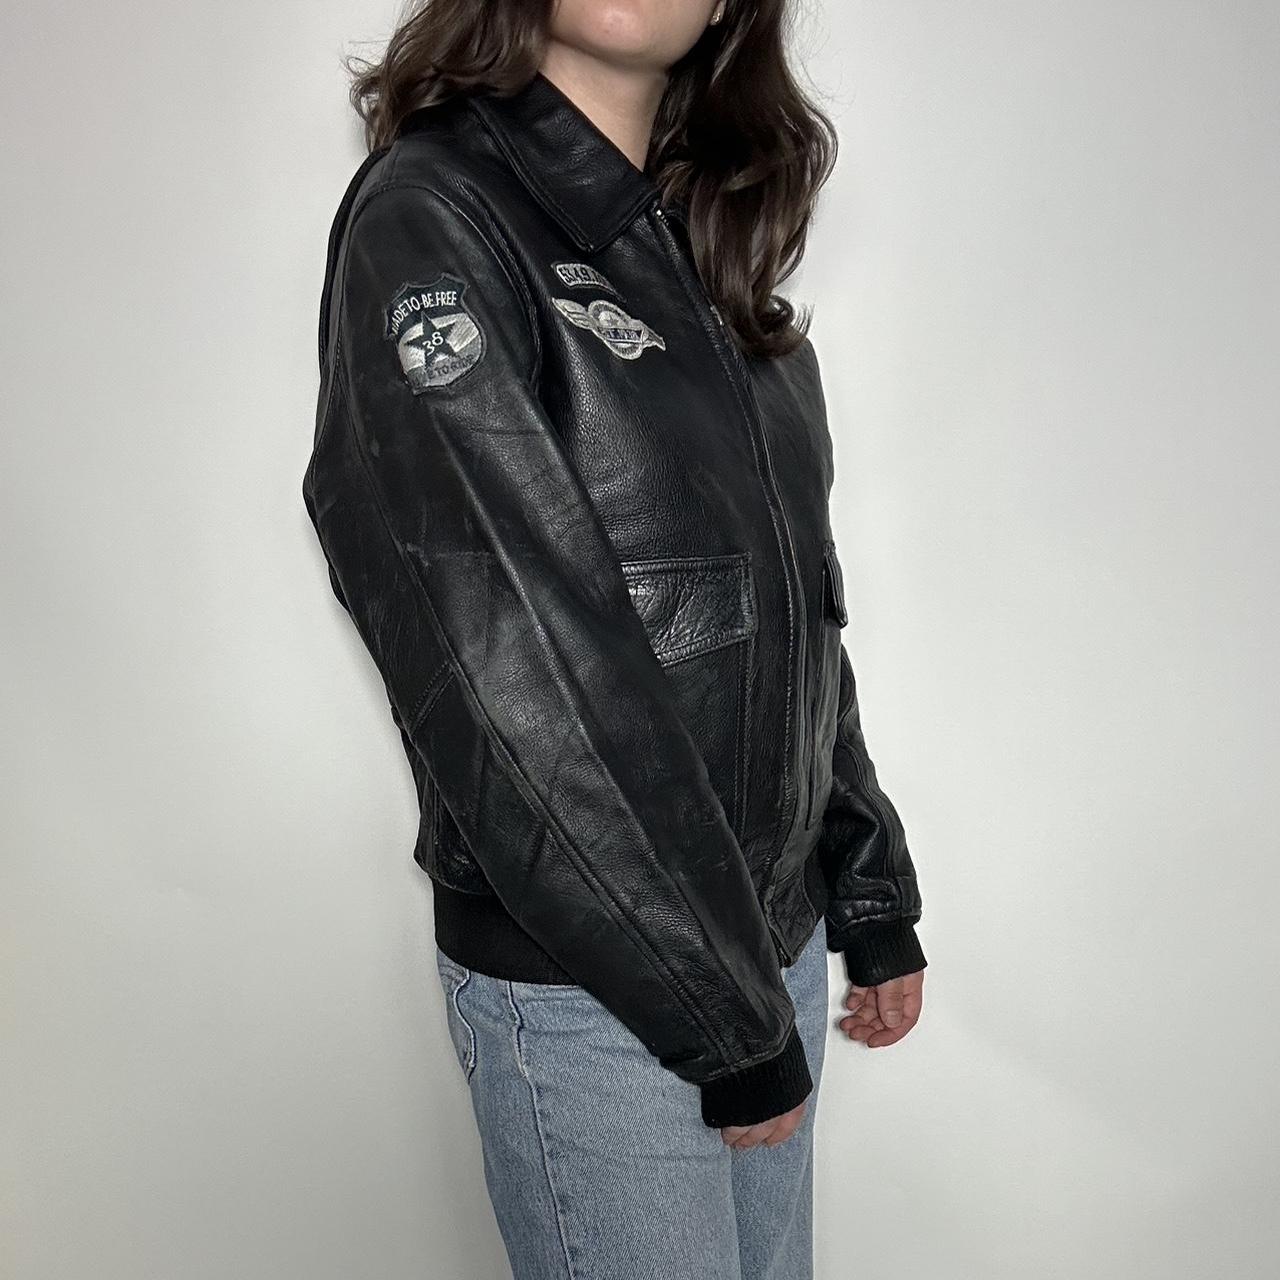 Vintage 90s black leather bomber jacket